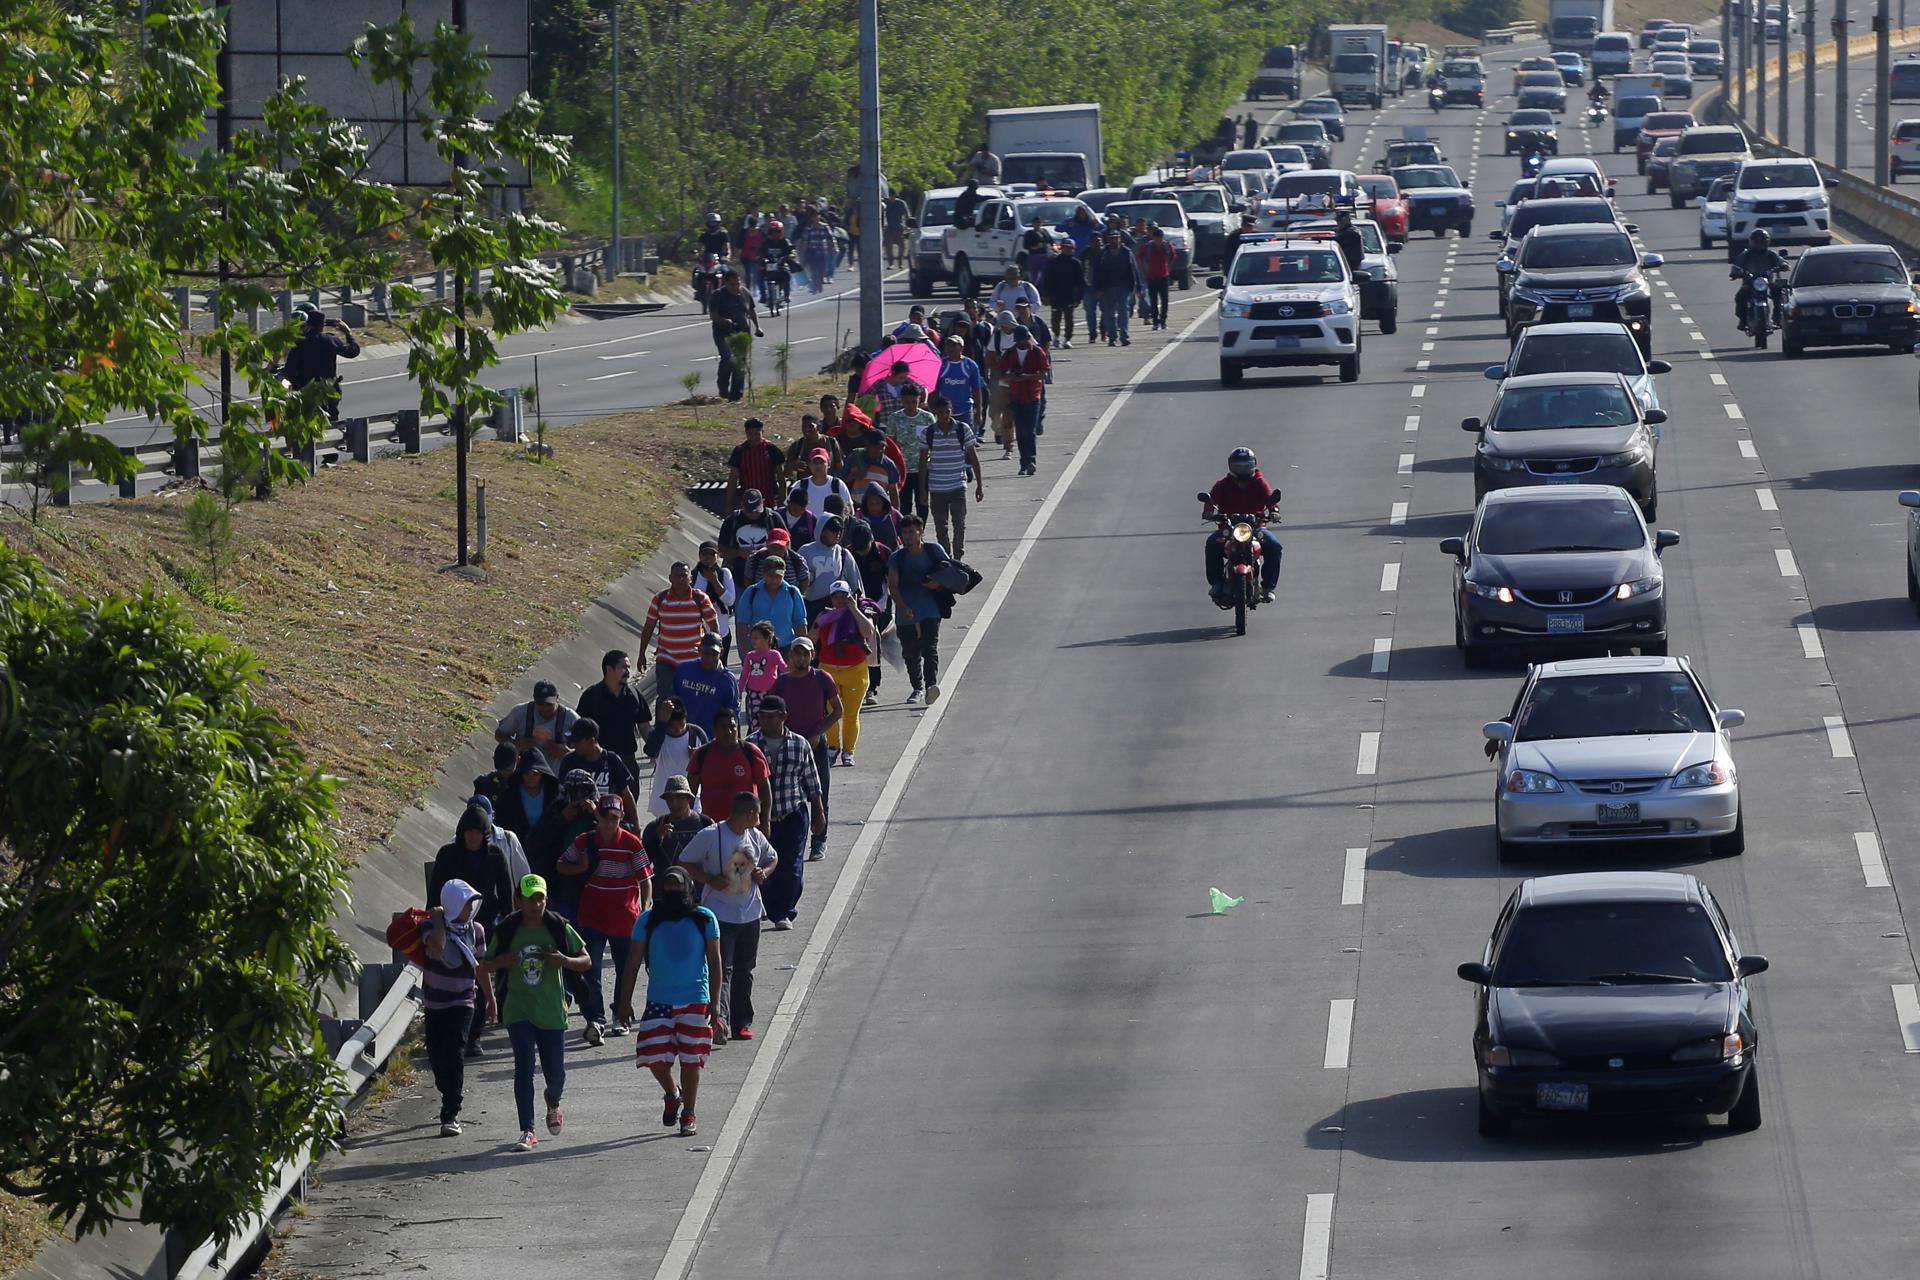 Unas 60 personas, parte de una caravana migrante, parten hacia EEUU desde San Salvador (El Salvador). Imagen de archivo. EFE/ Rodrigo Sura
